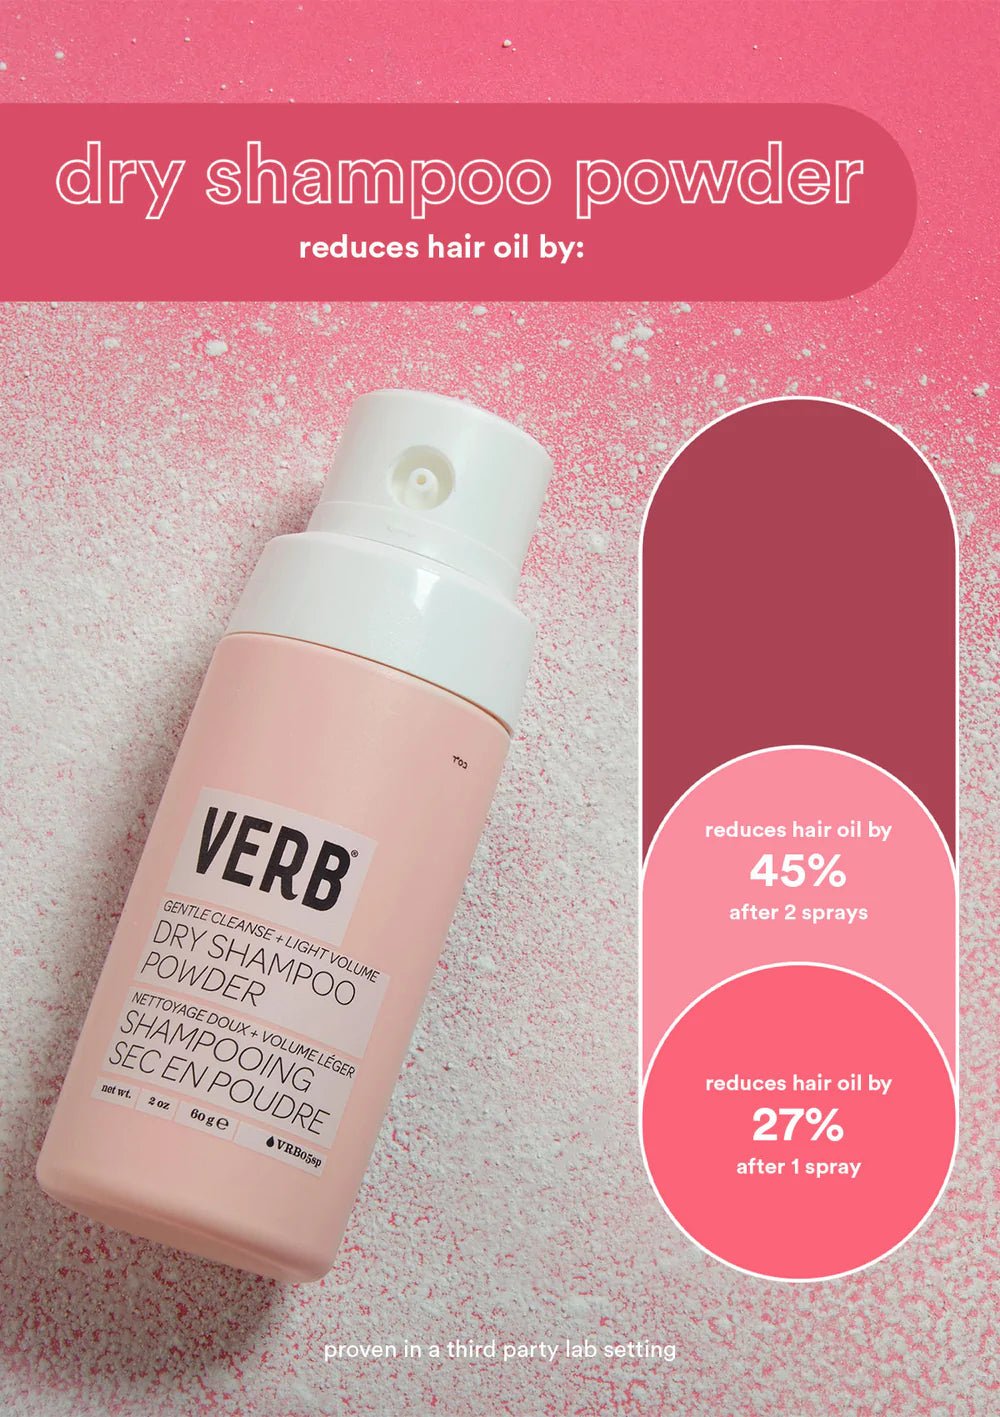 Verb Dry Shampoo Powder - Blend Box